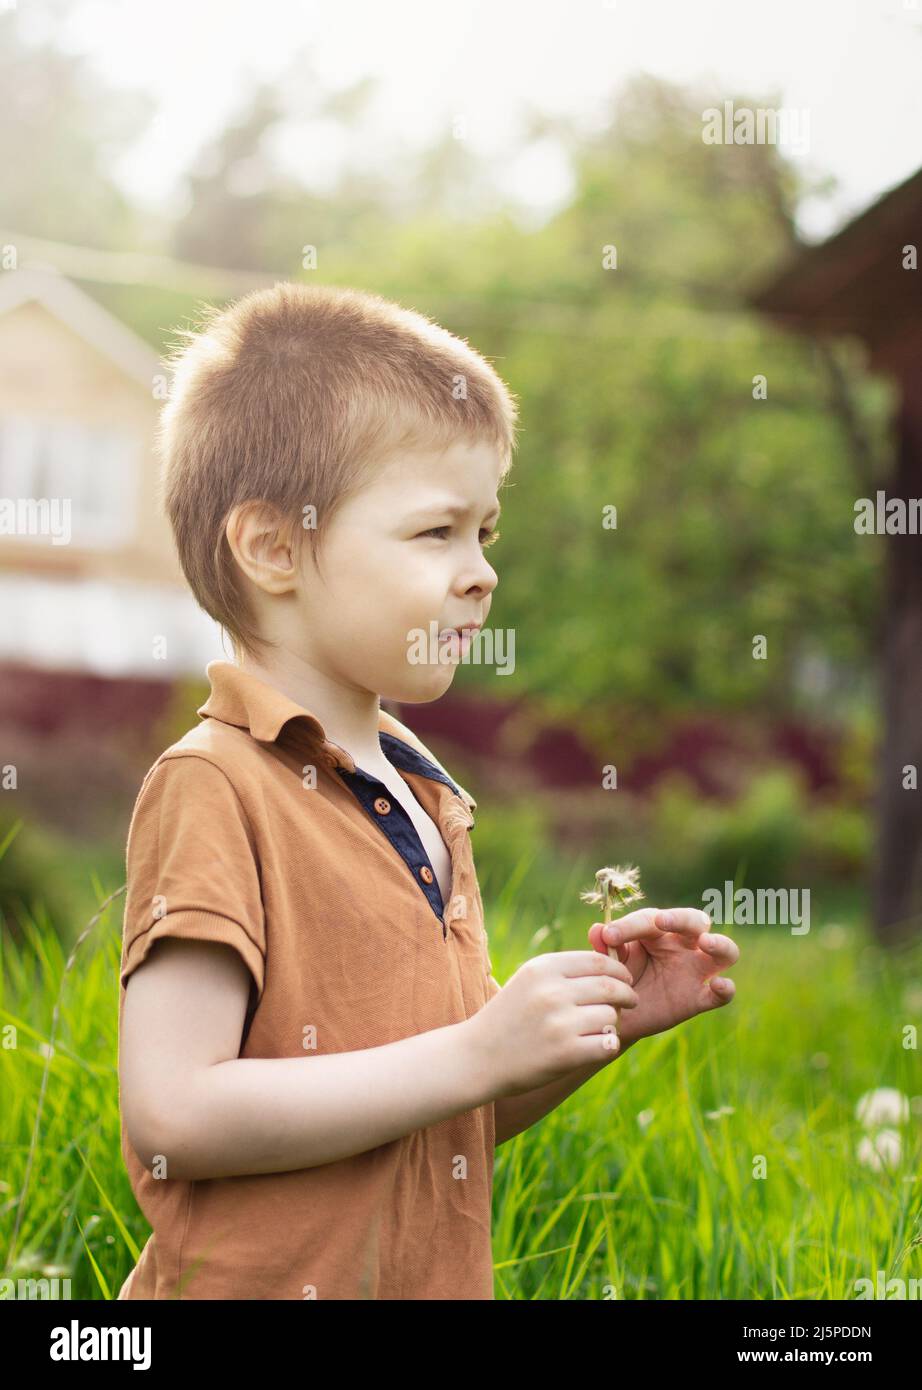 Un ragazzo di 5 anni tiene un dente d'leone in estate fuori nel villaggio in una giornata di sole, guardando lontano dalla macchina fotografica Foto Stock